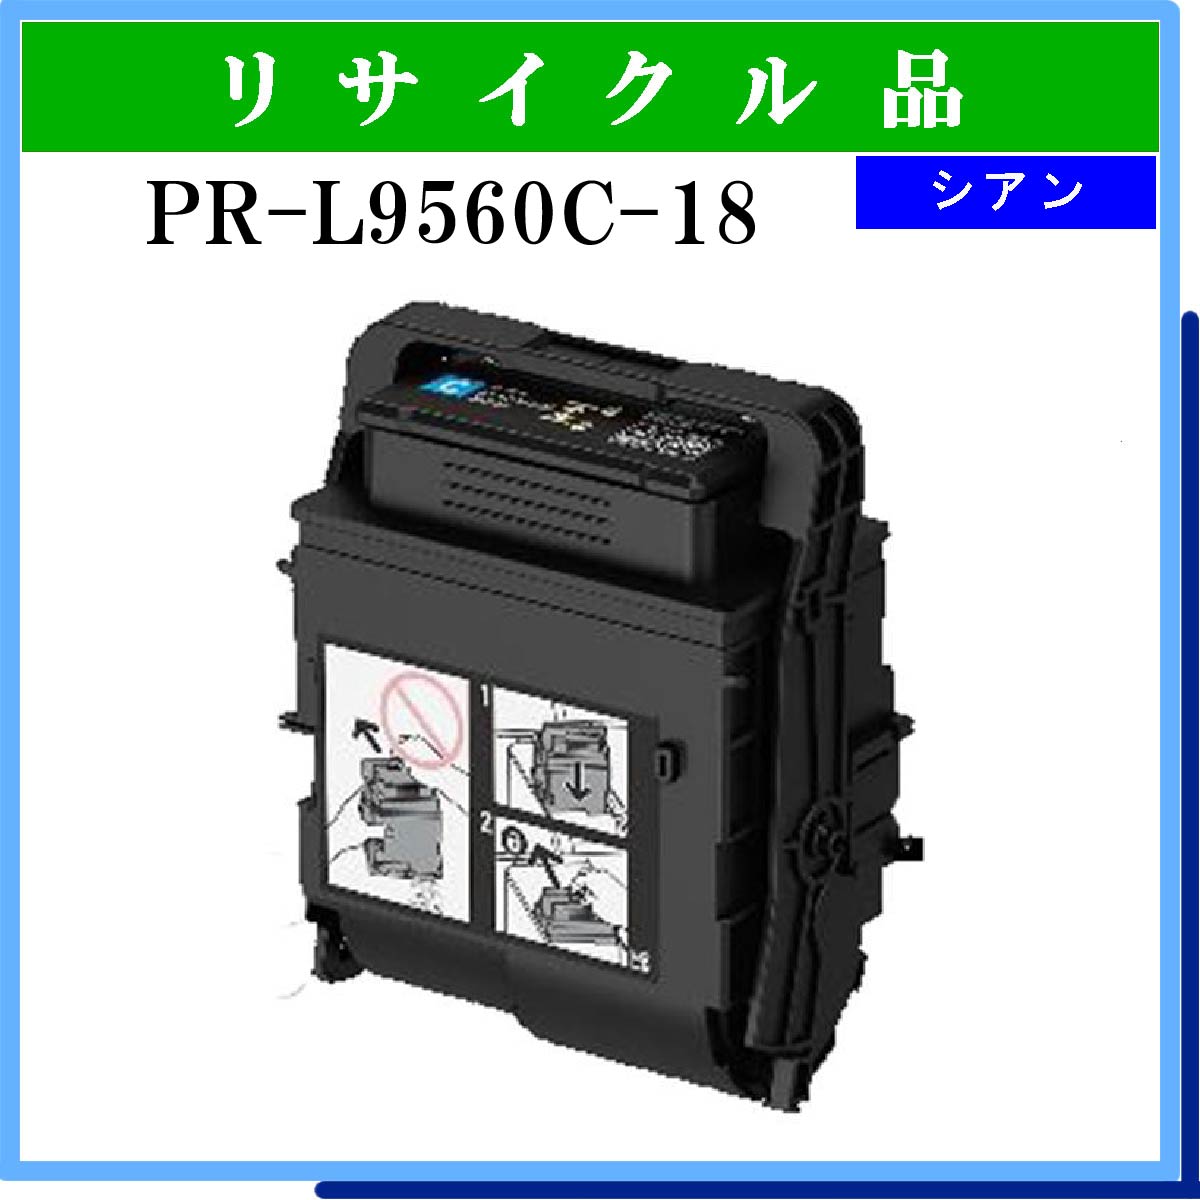 PR-L9560C-18